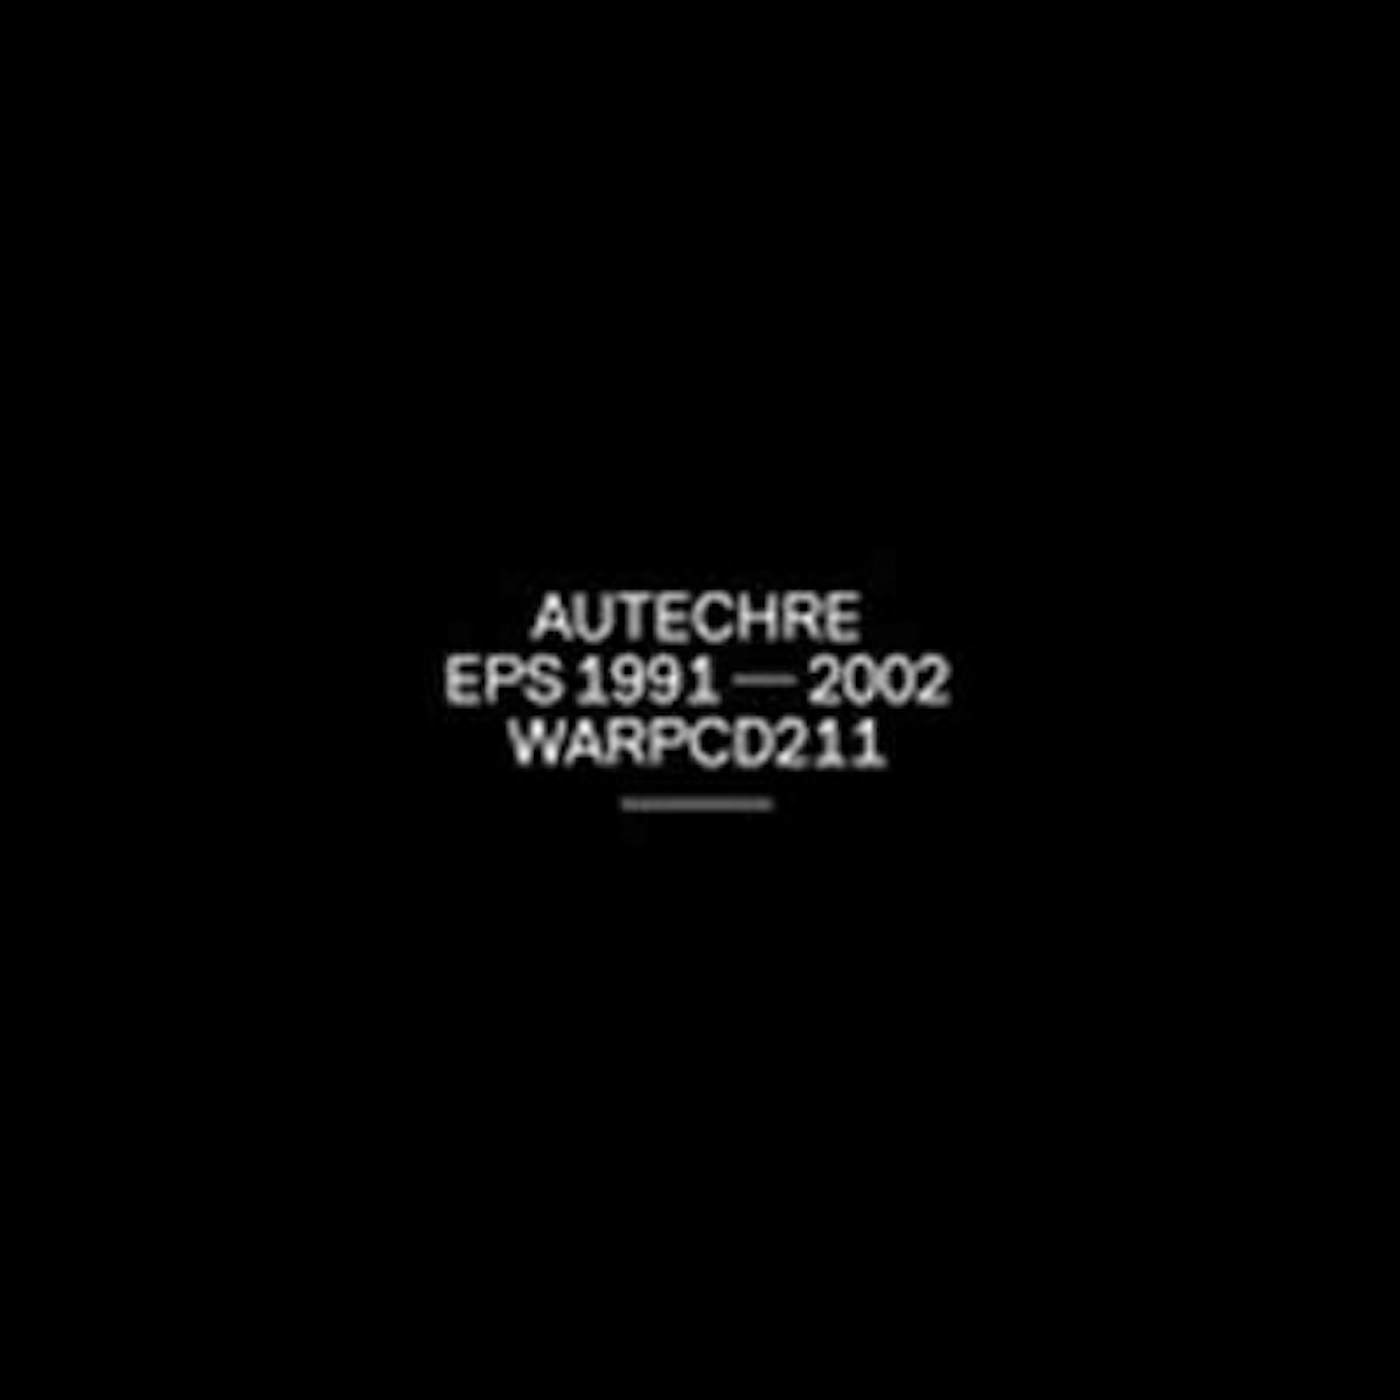 Autechre EPS 1991 - 2002 CD